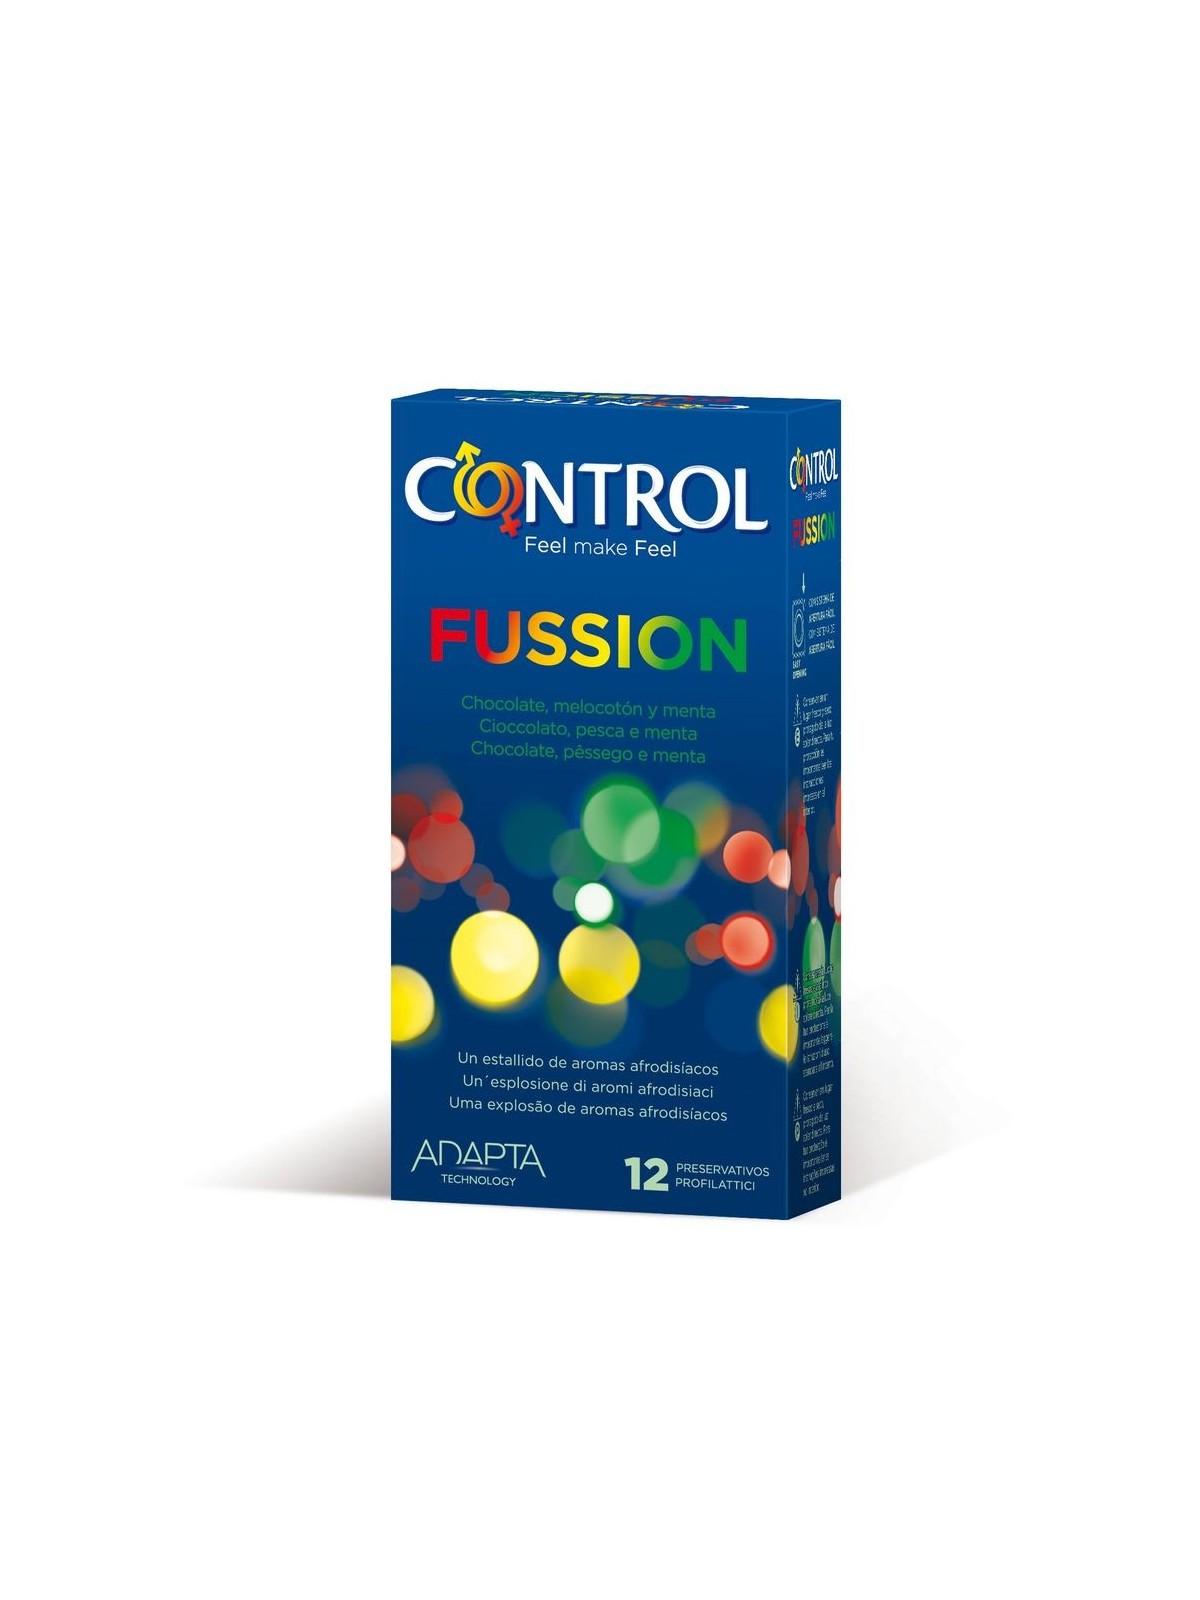 Control Adapta Fussion - Comprar Condones de sabor Control - Preservativos de sabores (1)